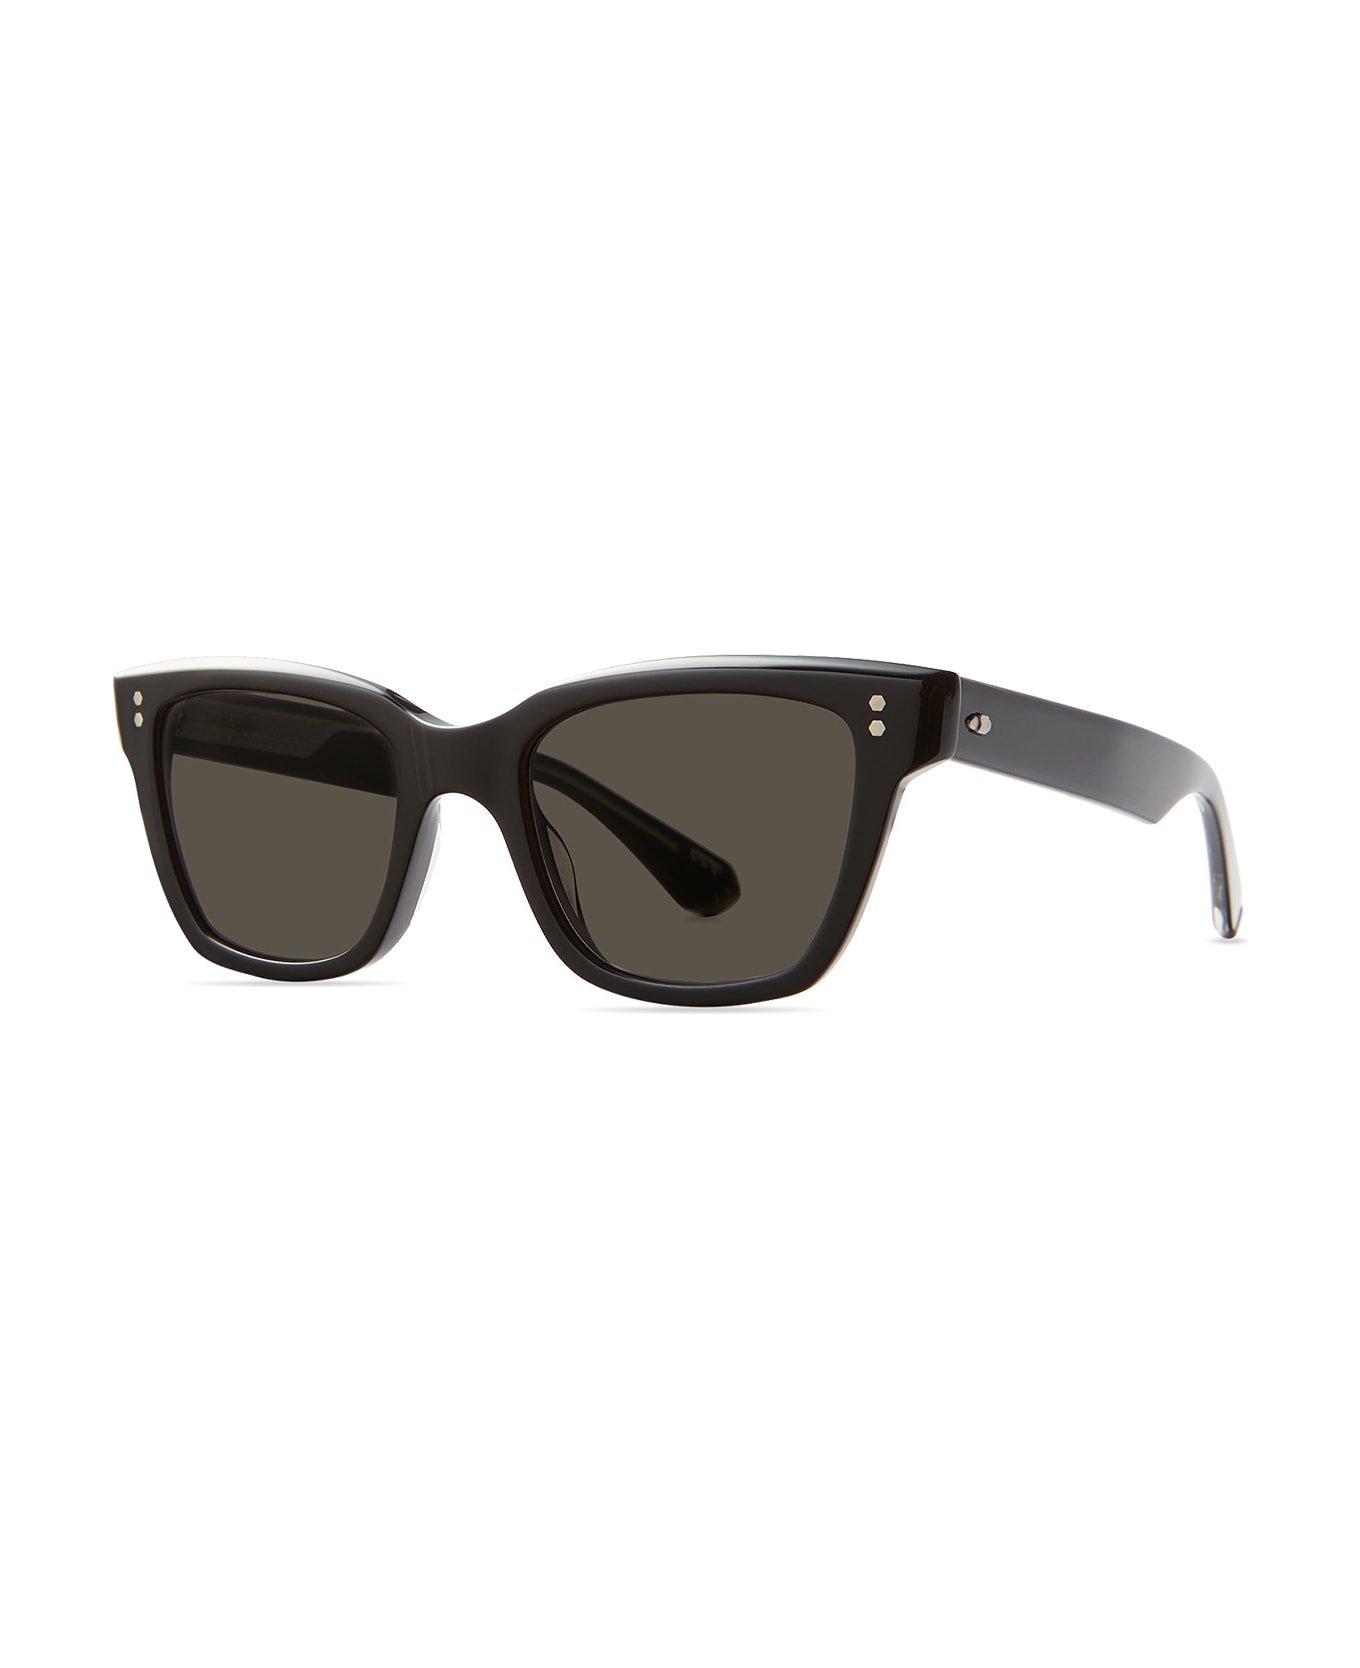 Mr. Leight Lola S Black-platinum Sunglasses - Black-Platinum